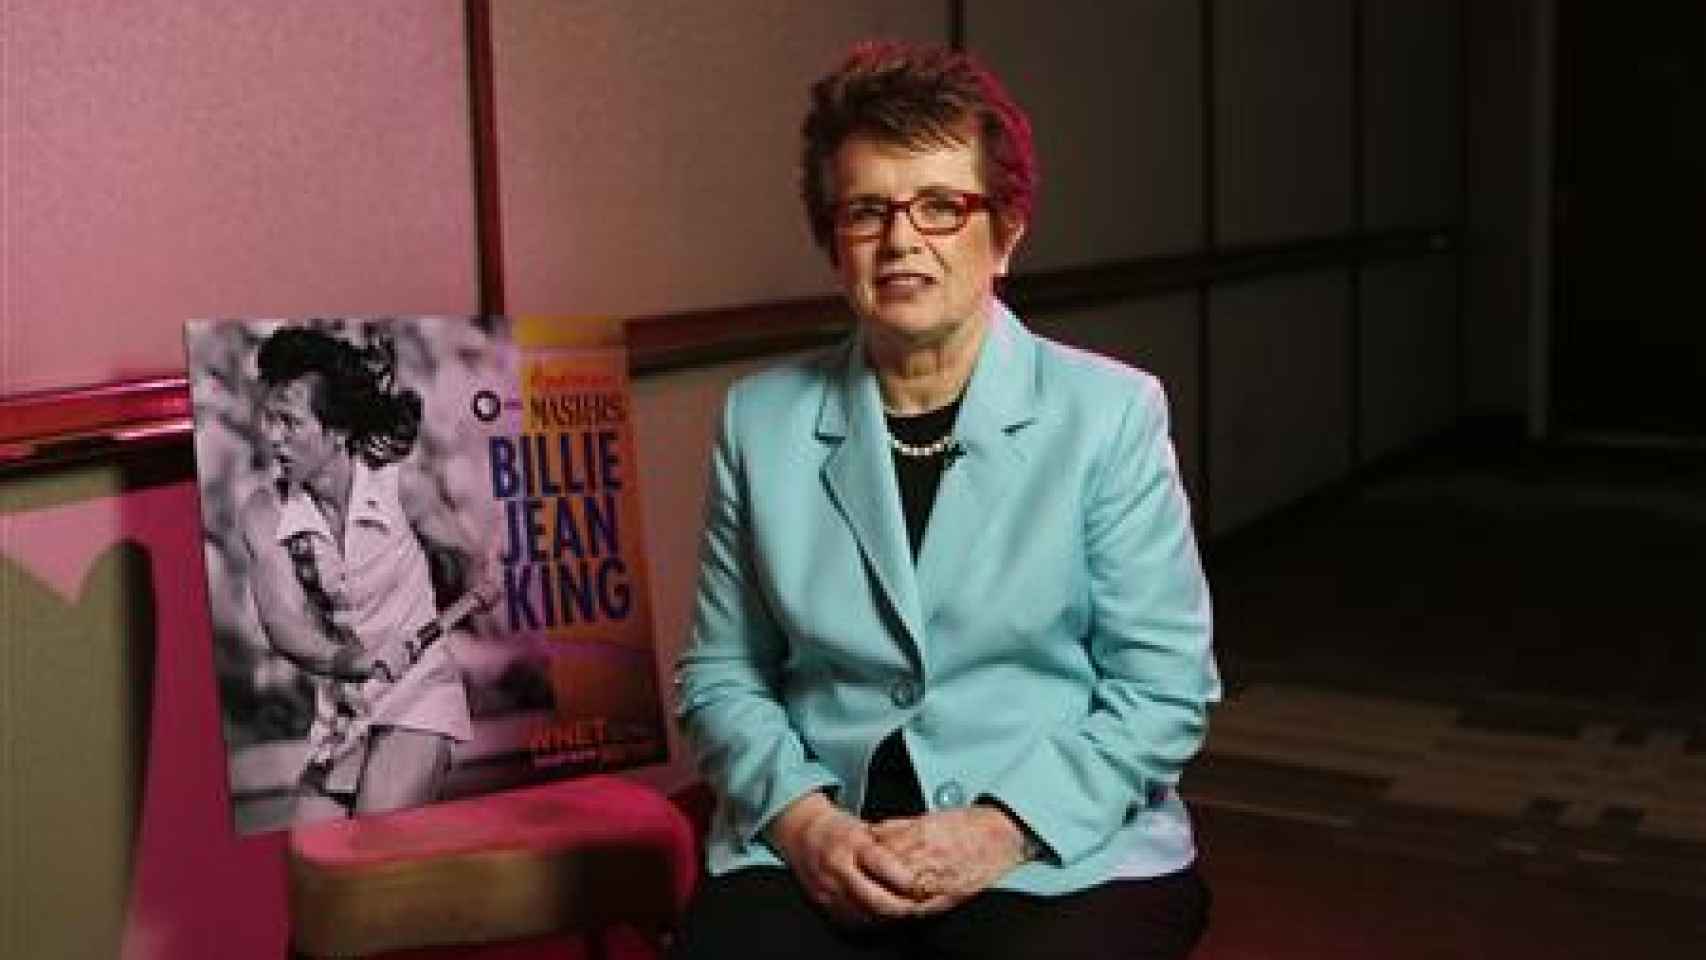 Billie Jean King, tenista y escritora